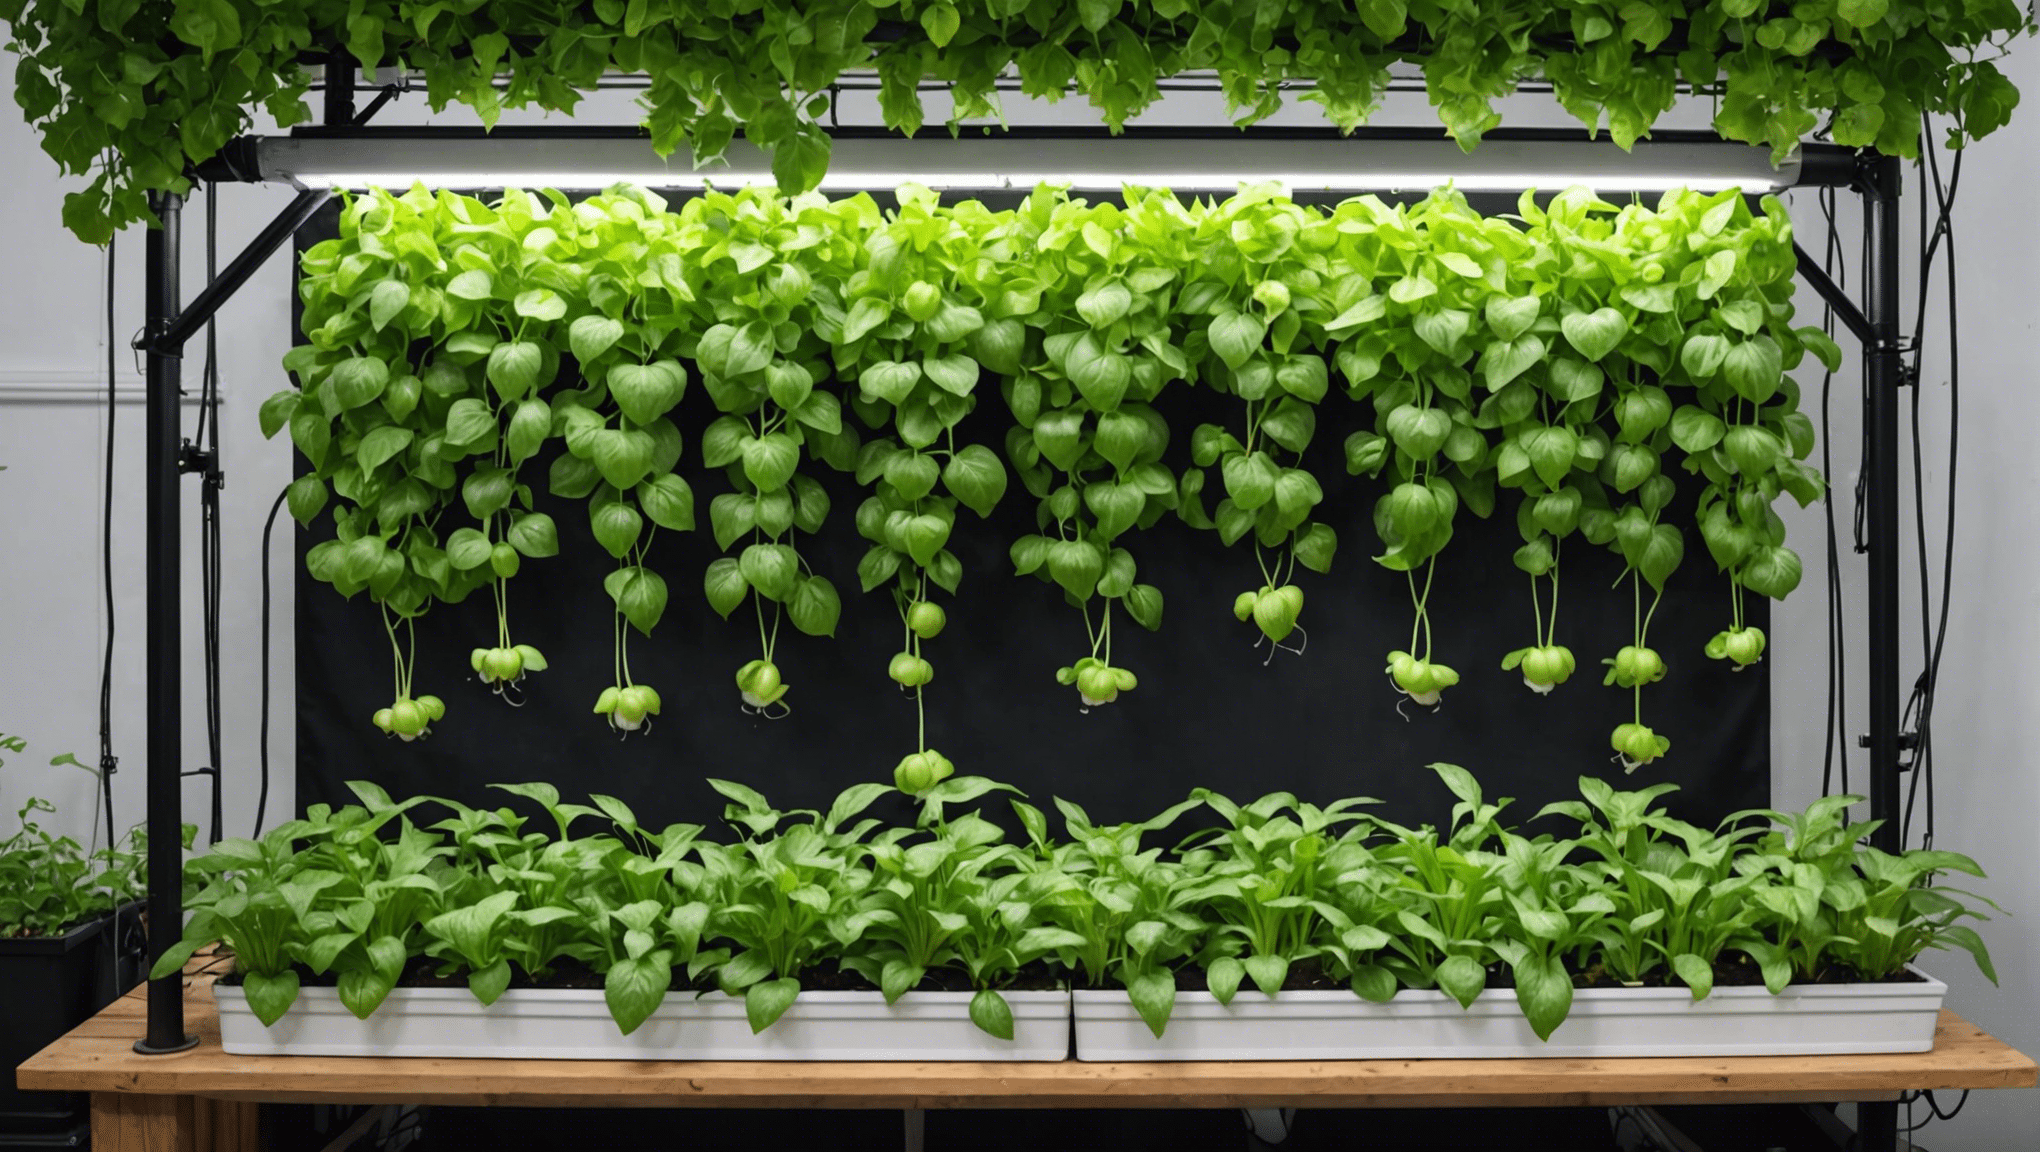 scopri idee di giardinaggio idroponico creative e innovative per migliorare la tua esperienza di giardinaggio. esplora metodi e progetti unici per coltivare le tue piante in un sistema idroponico.